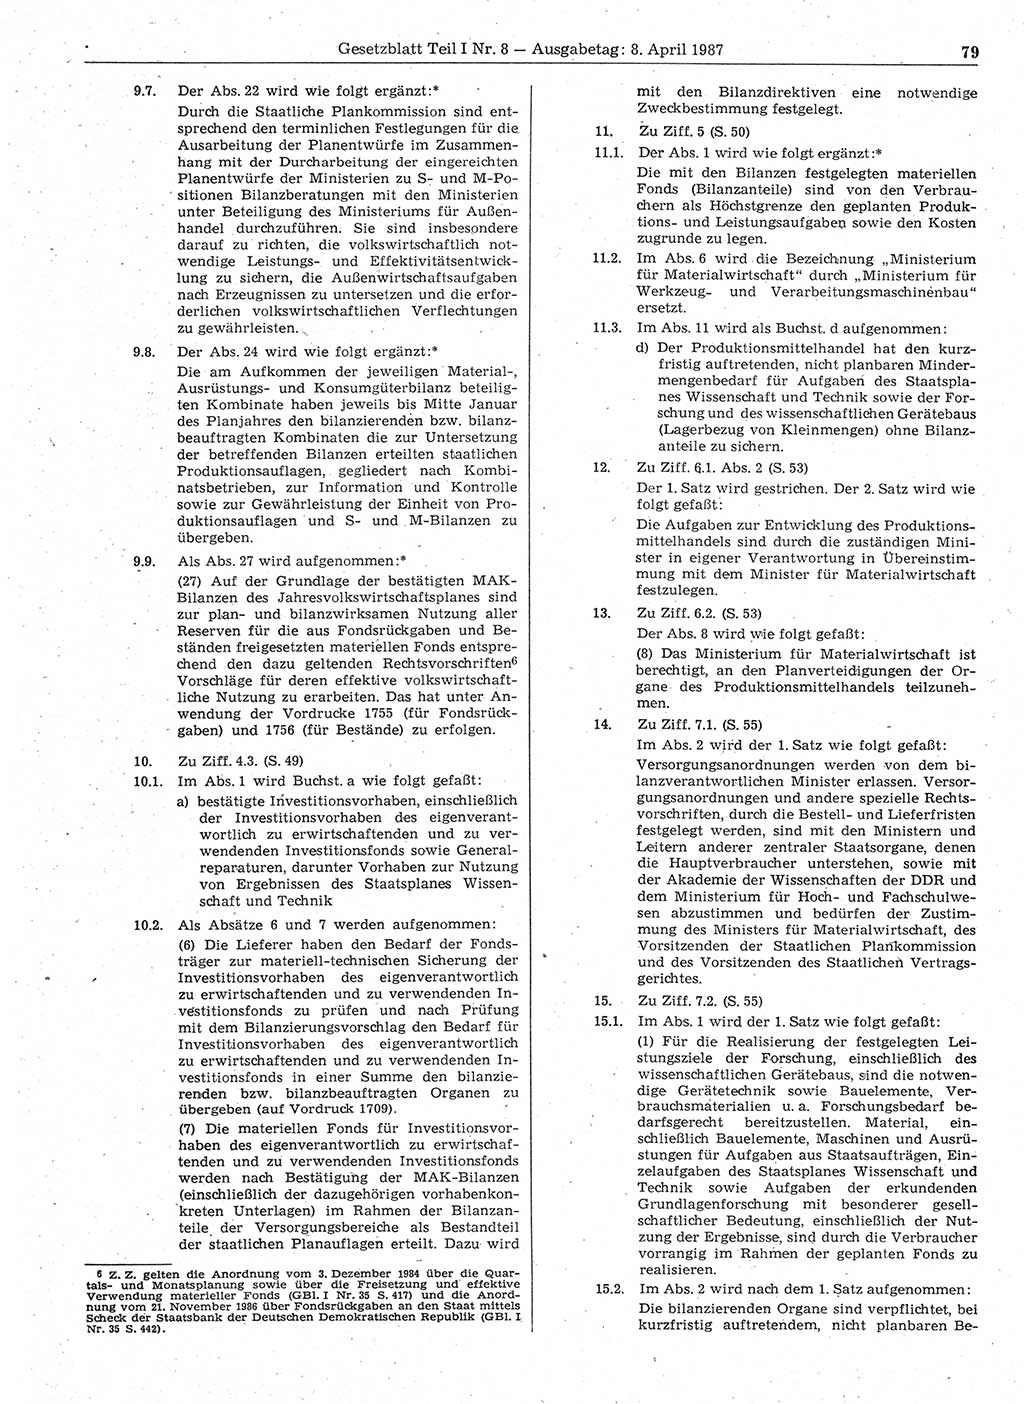 Gesetzblatt (GBl.) der Deutschen Demokratischen Republik (DDR) Teil Ⅰ 1987, Seite 79 (GBl. DDR Ⅰ 1987, S. 79)